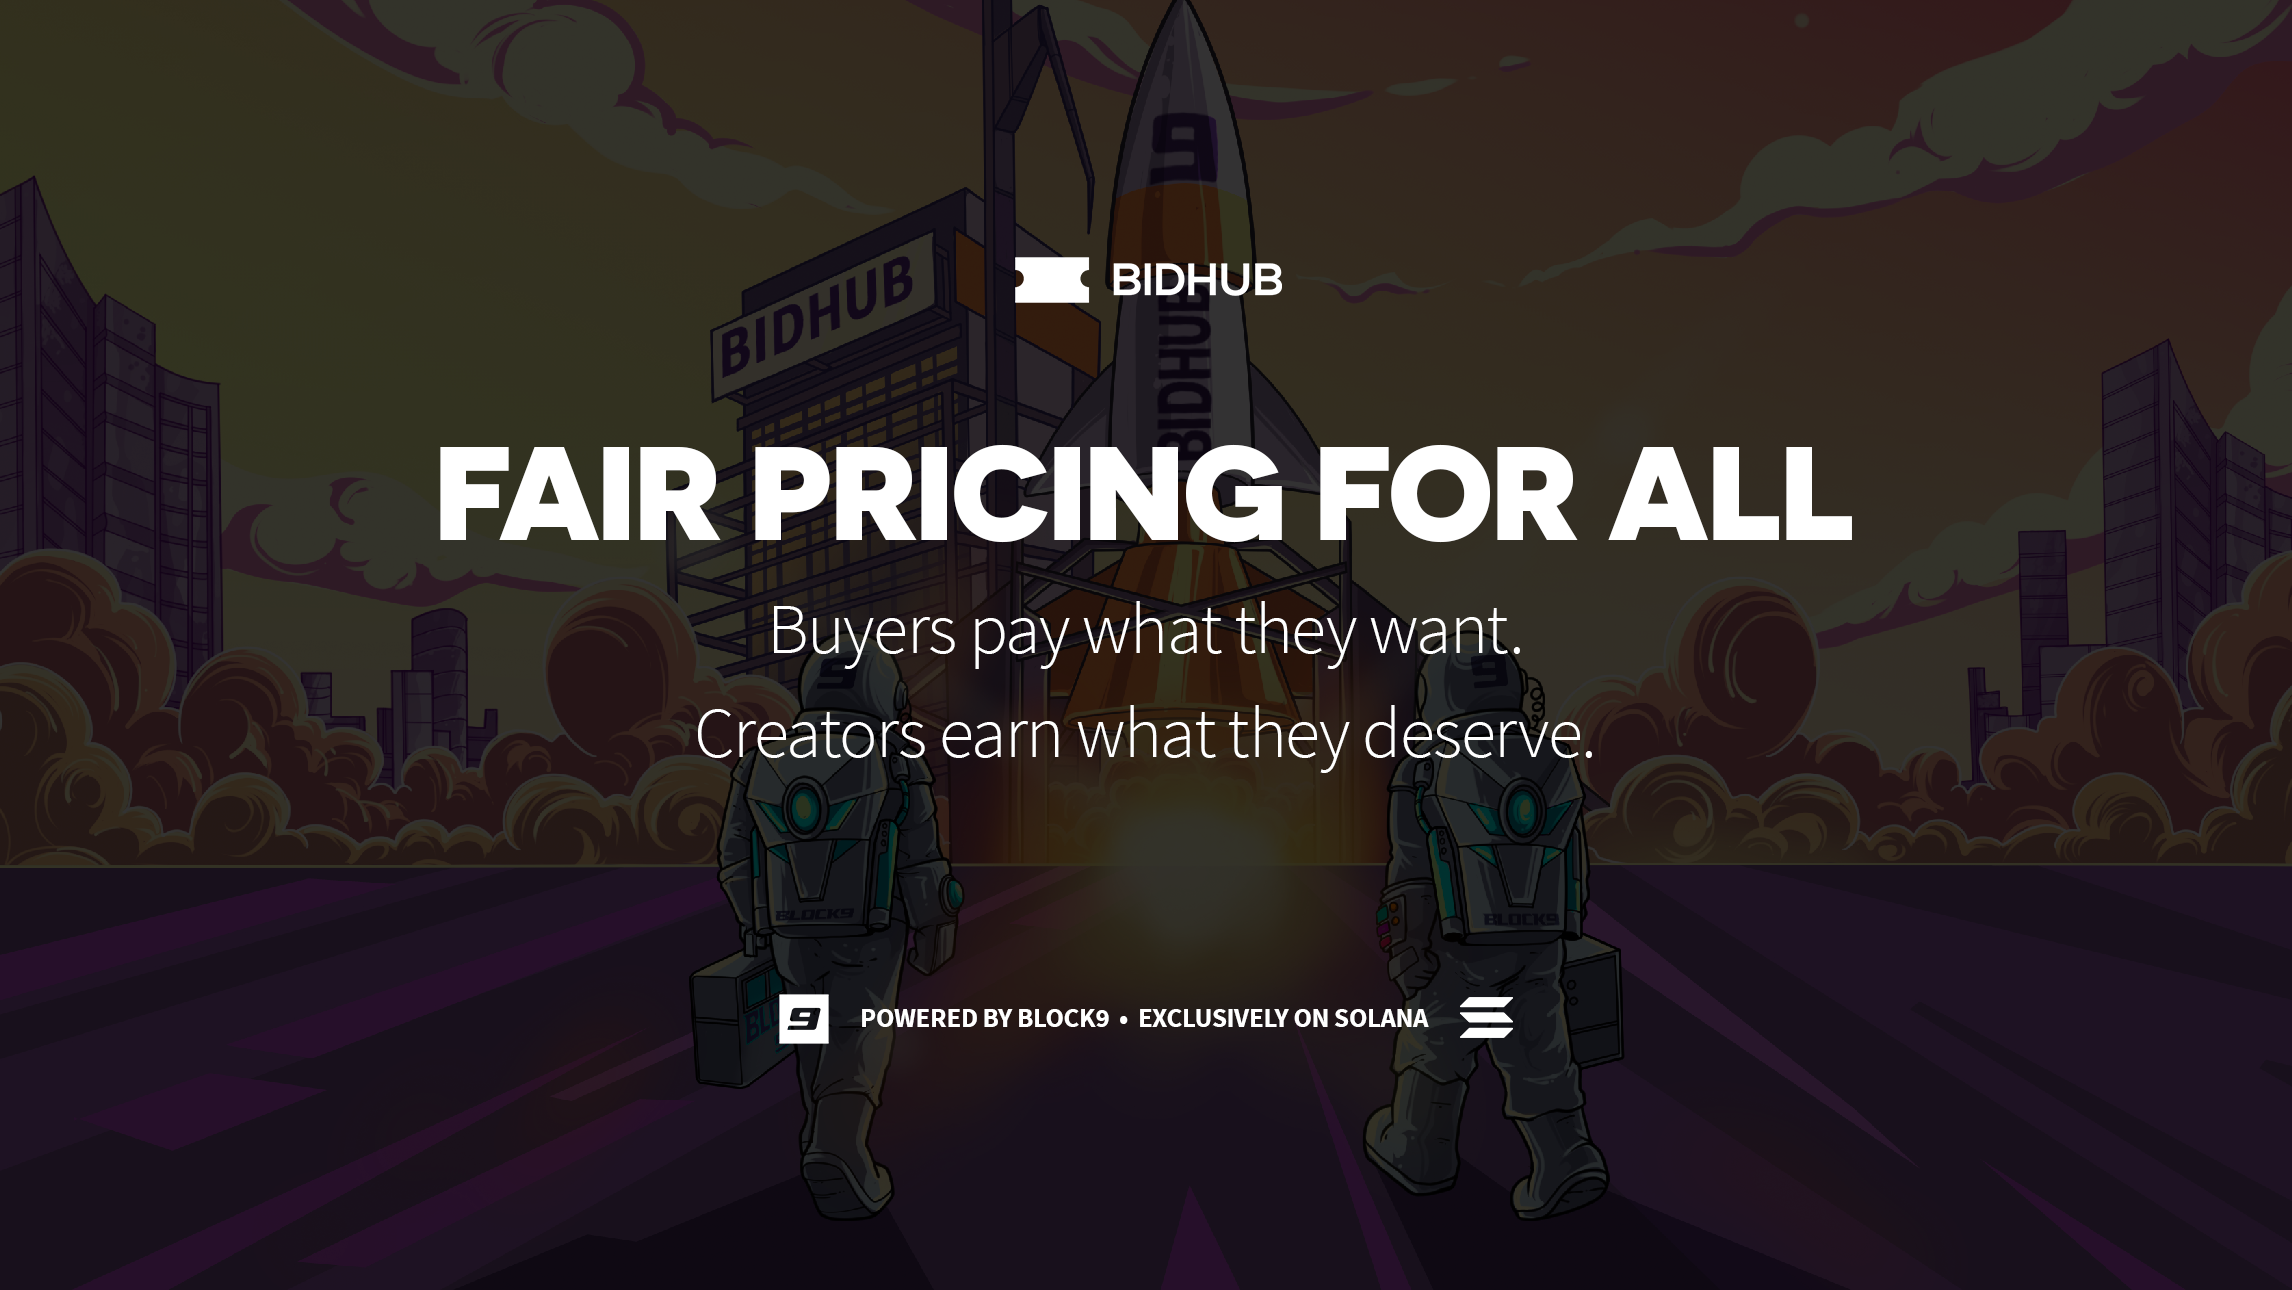 BidHub: Fair Pricing for All